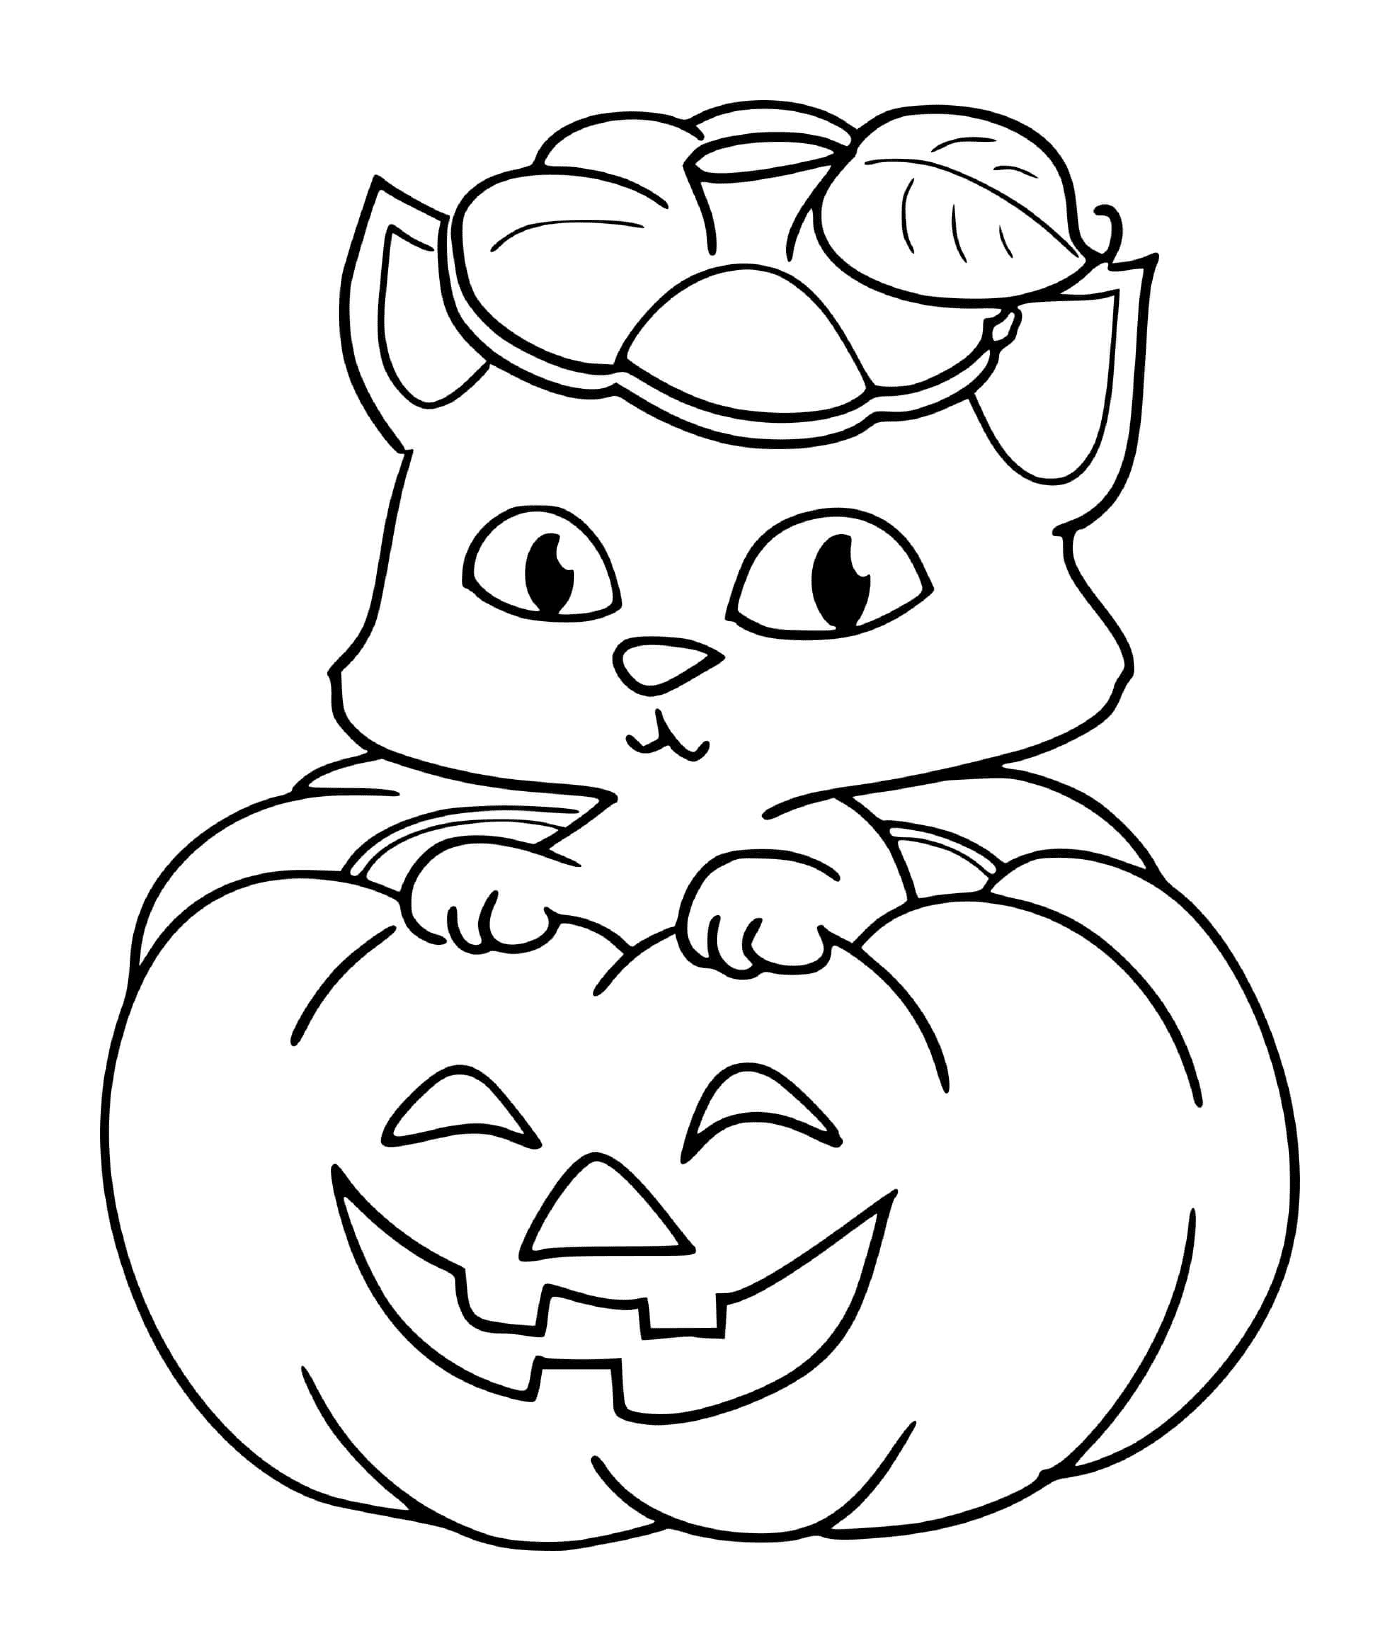  Un gatito sentado en una calabaza para Halloween 